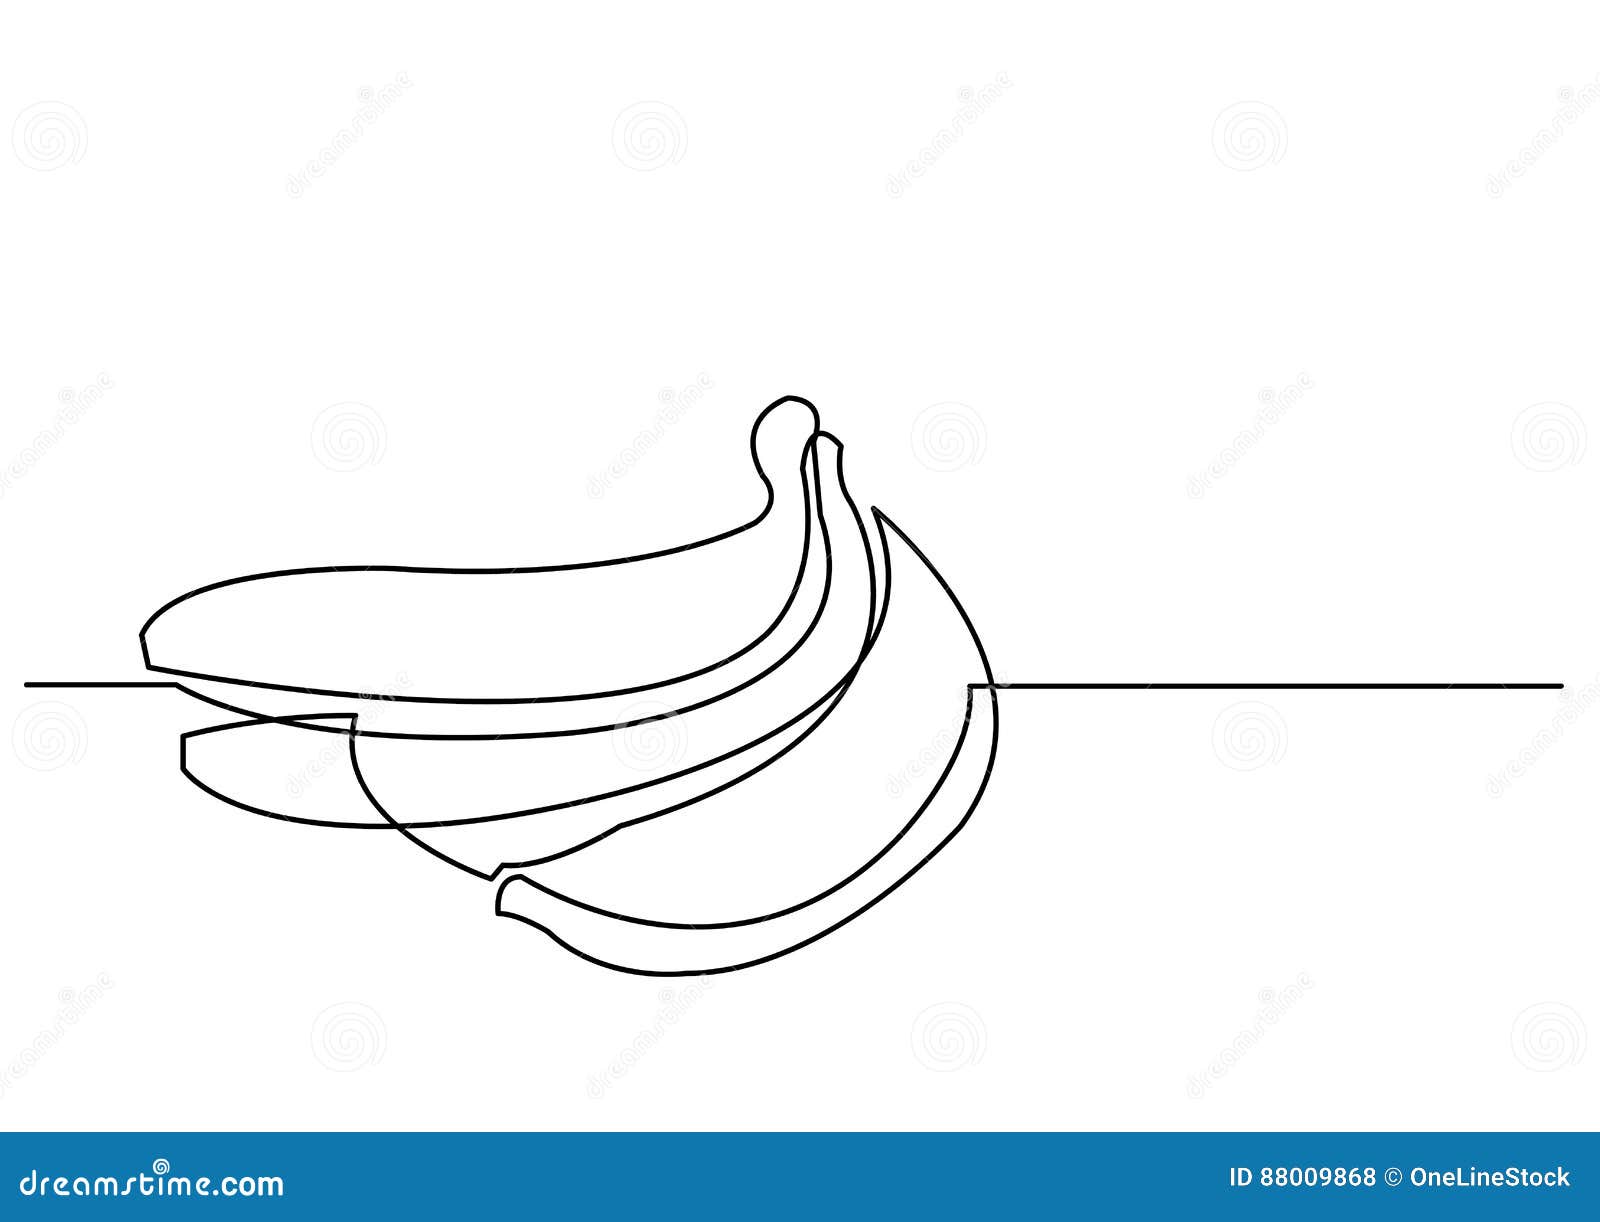 Dessin Au Trait Continu Des Bananes Illustration De Vecteur